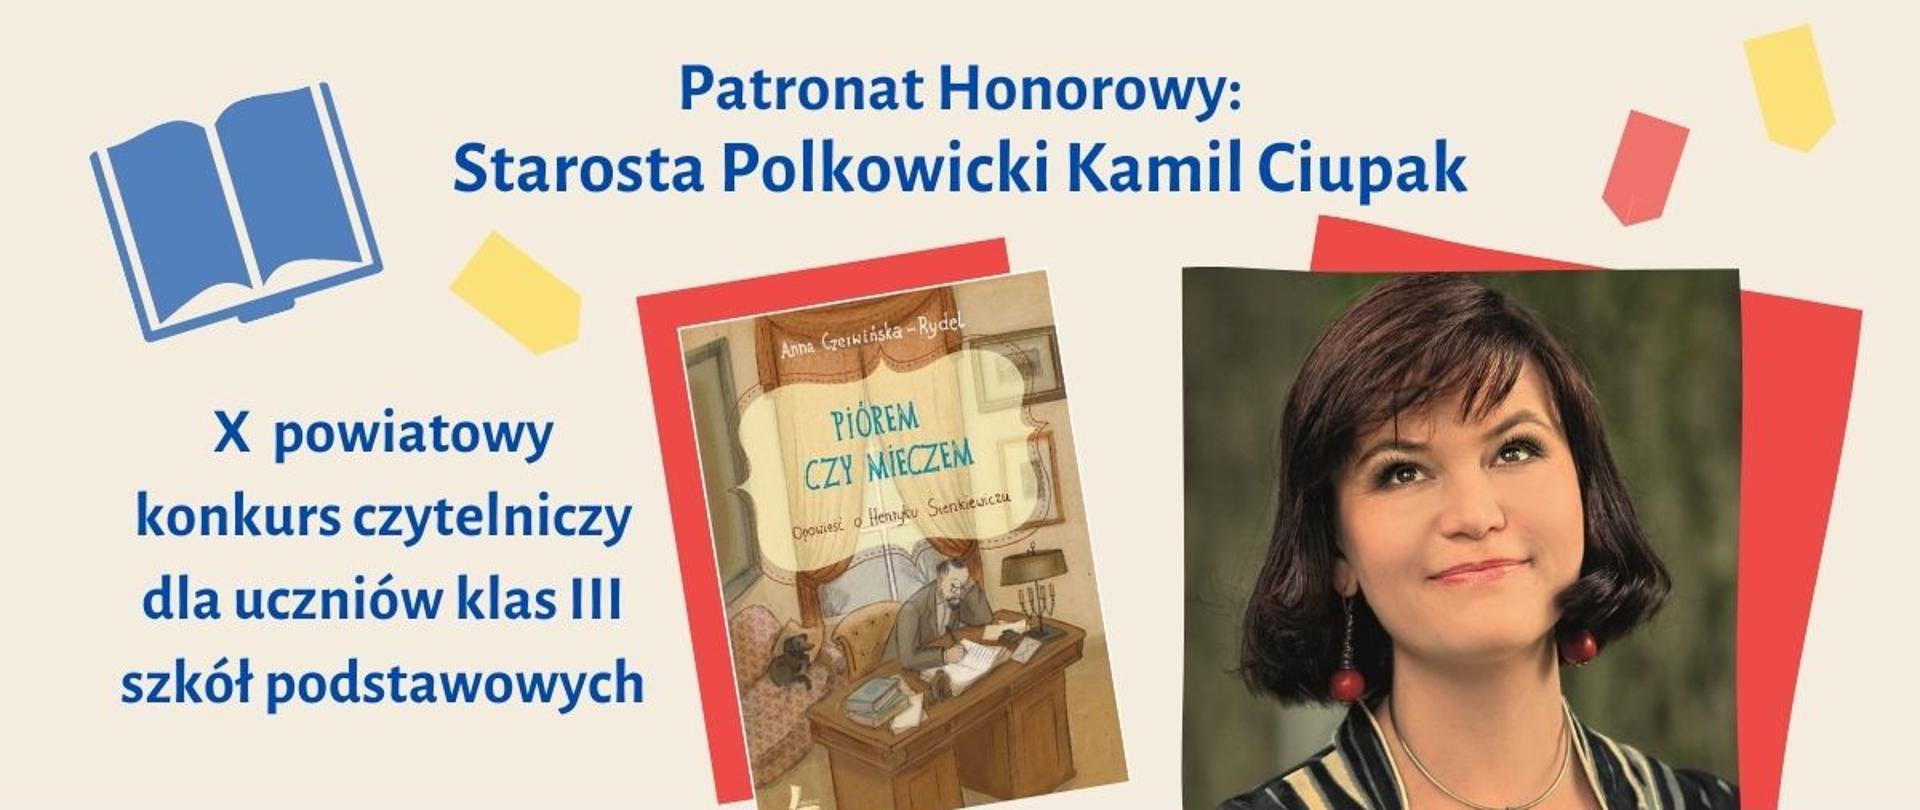 Na plakacie promującym konkurs czytelniczy jest zdjęcie książki oraz uśmiechniętej kobiety z tytułem konkursu